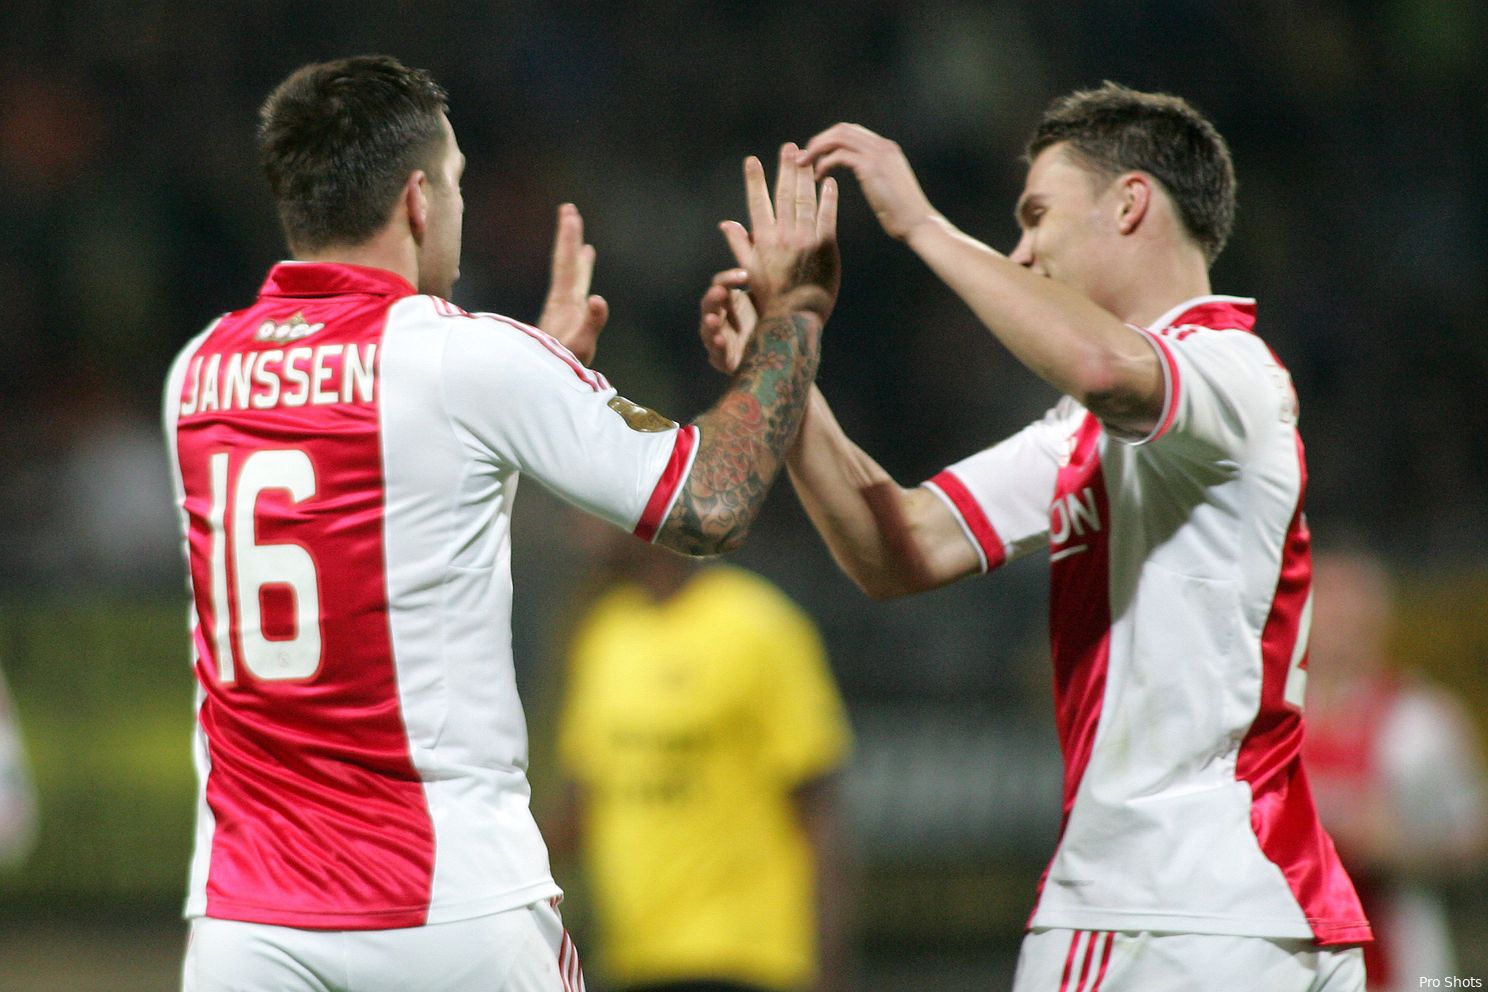 Boerrigter juicht actie op transfermarkt toe: ‘Een type Henderson heeft Ajax hard nodig’